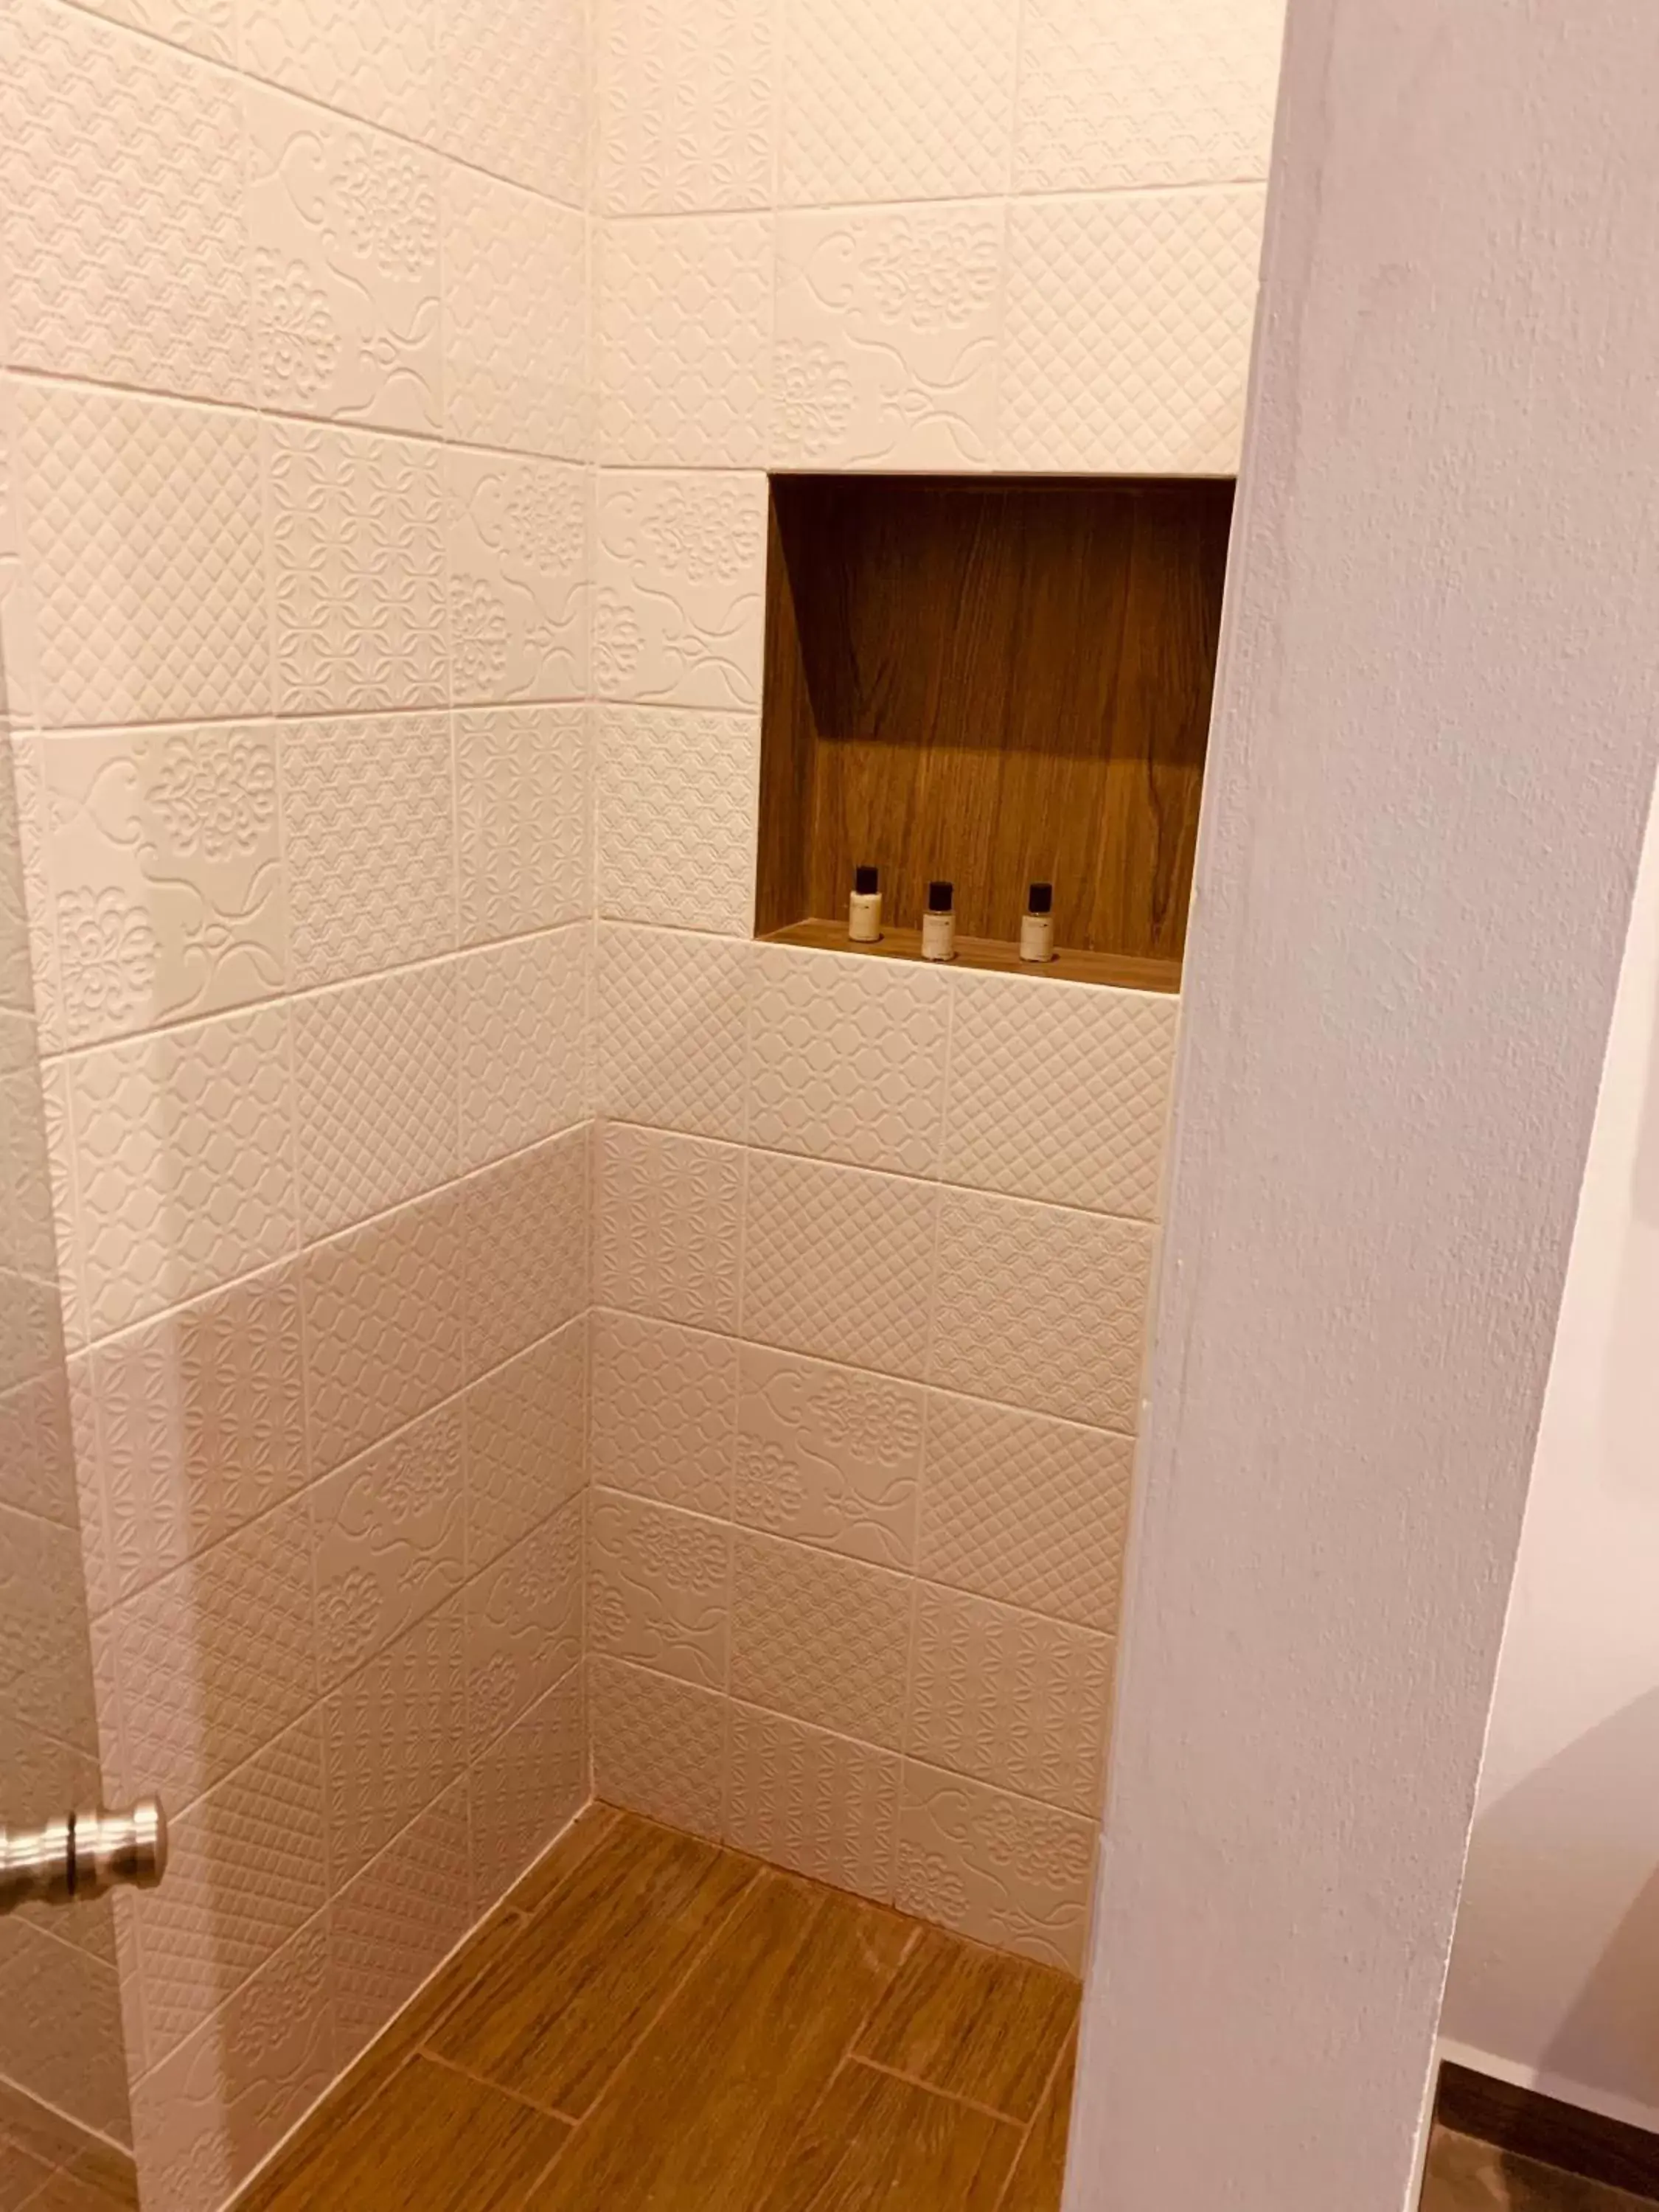 Bathroom in Hotel Muyu Tulum